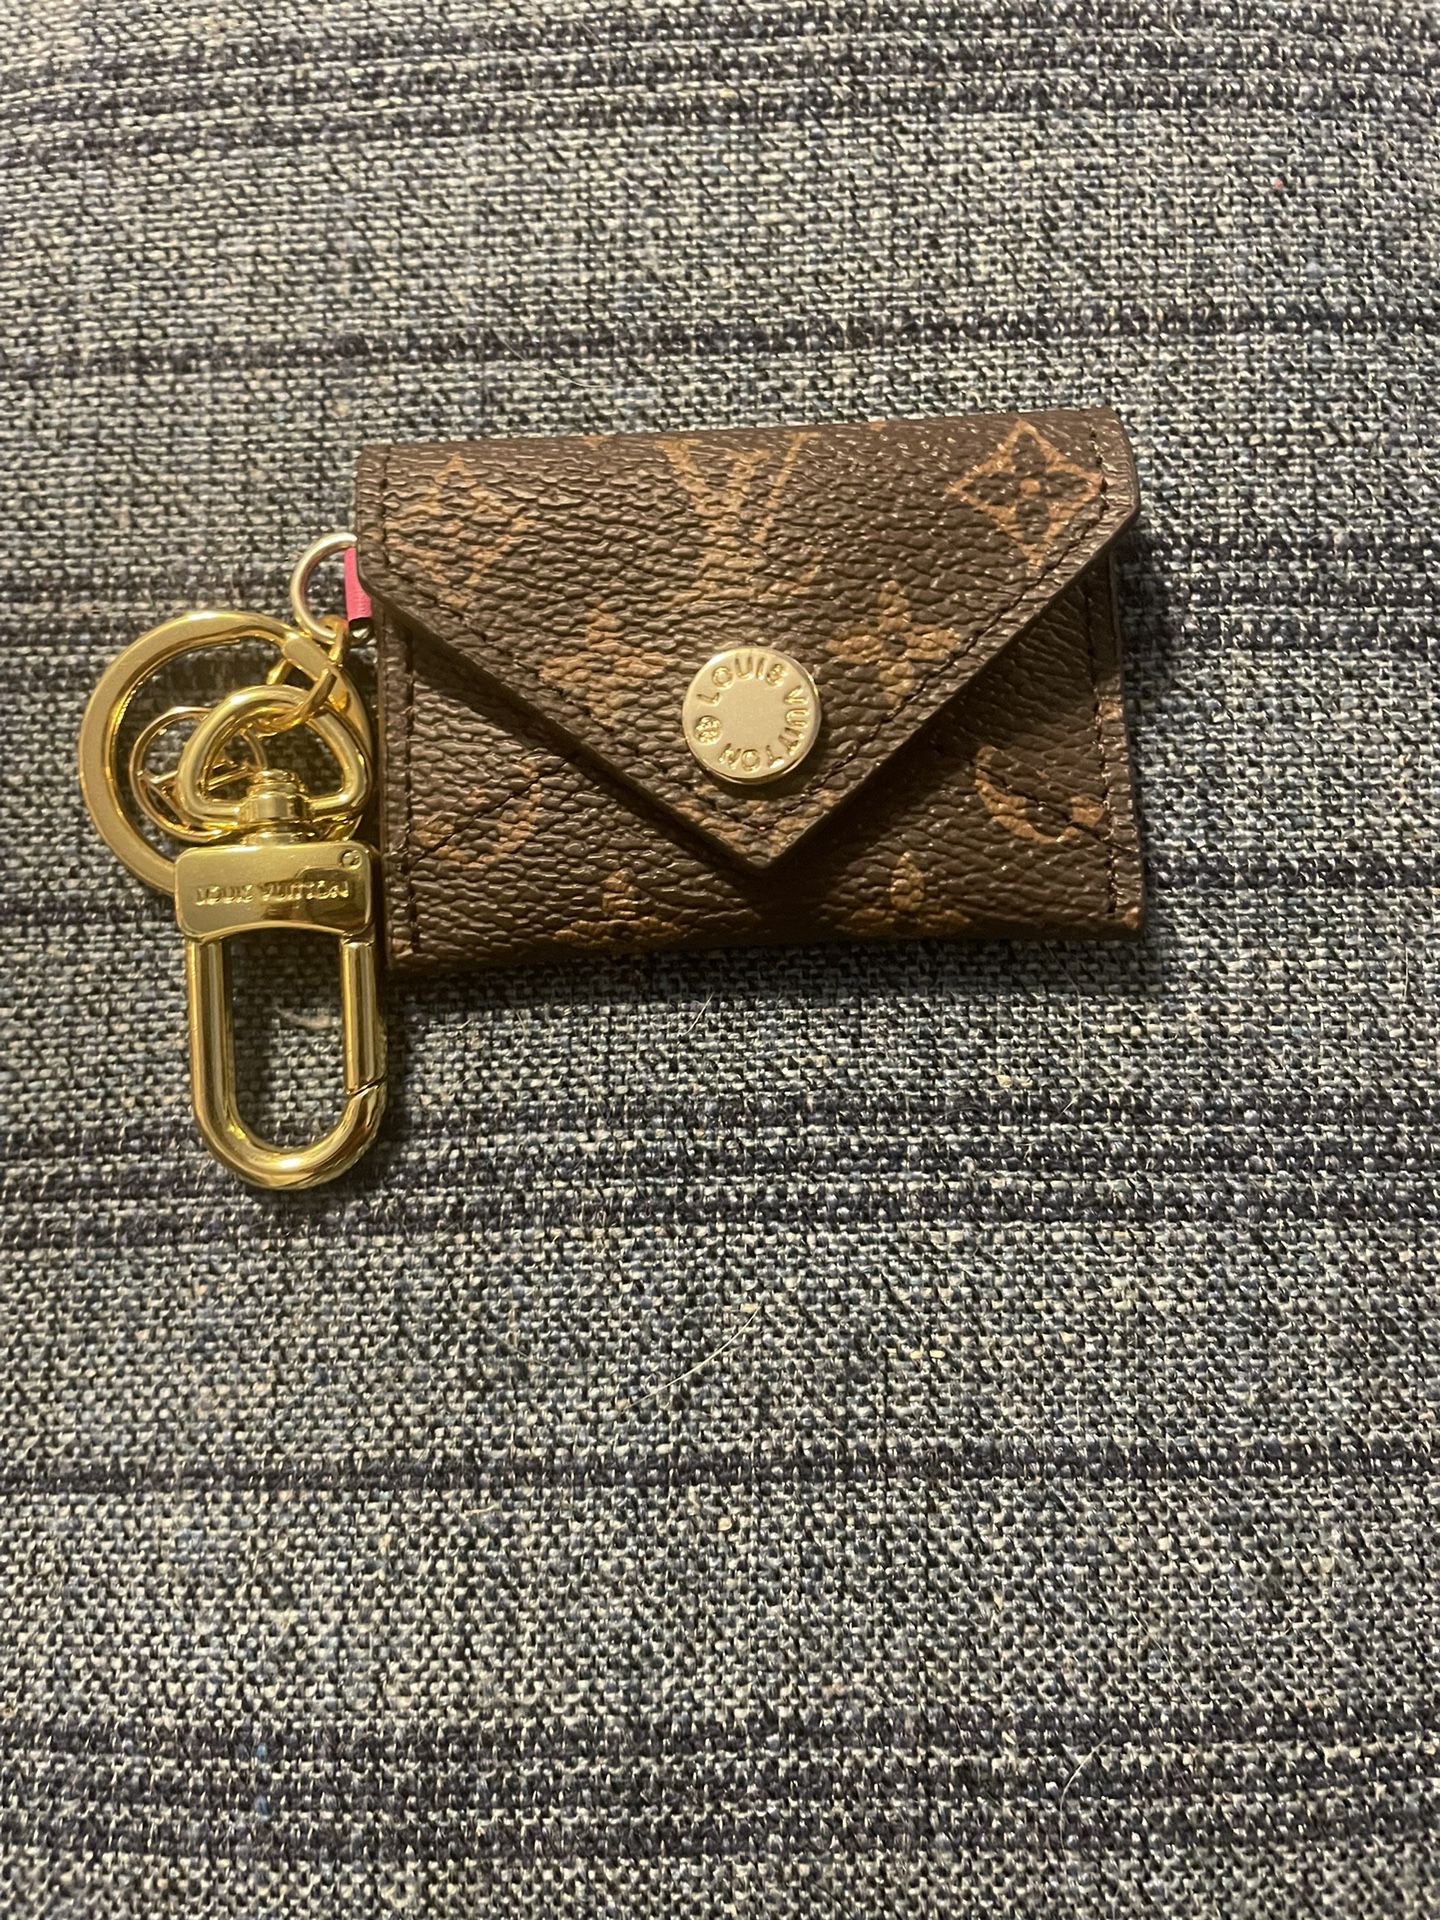 louis vuitton bag charm key chain 